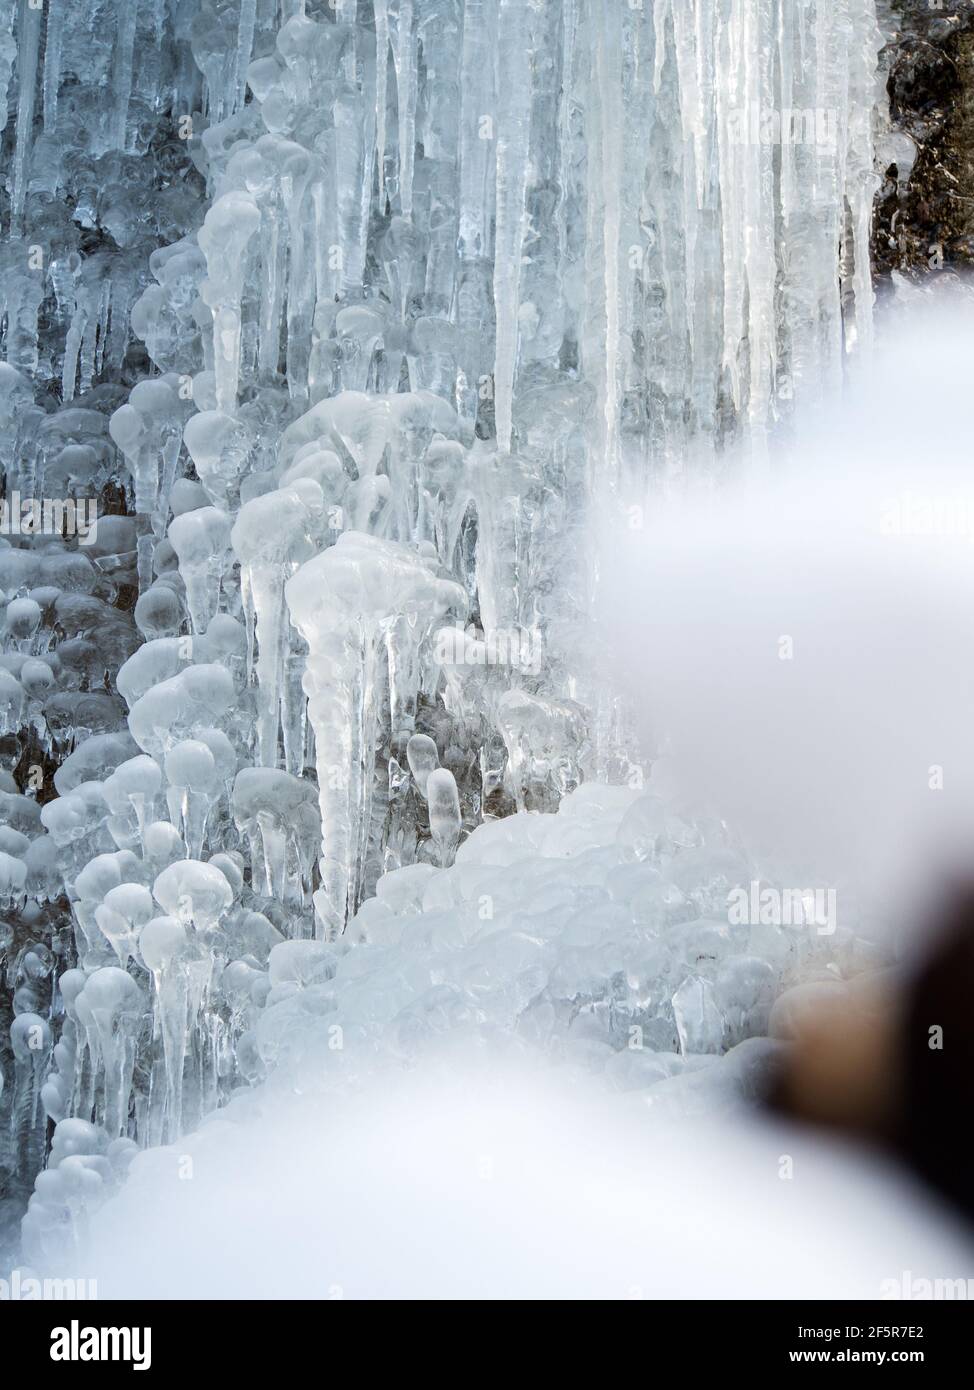 Gefrorener Wasserfall mit Schnee im Winter, Frozen waterfall with snow in winter Stock Photo